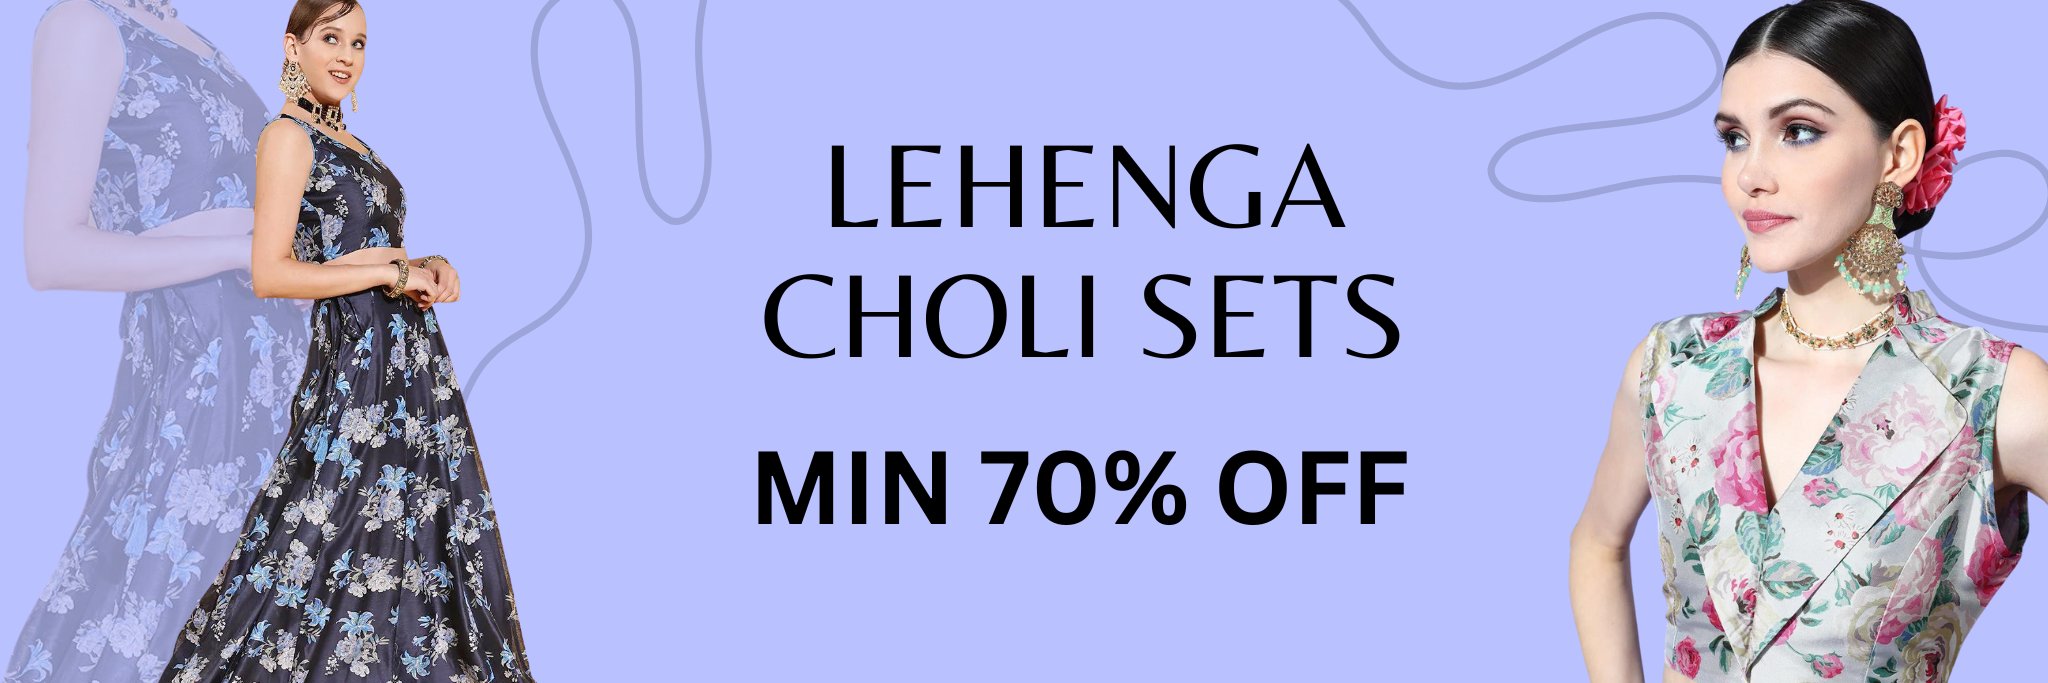 Lehenga Choli Sets - Min 70% Off